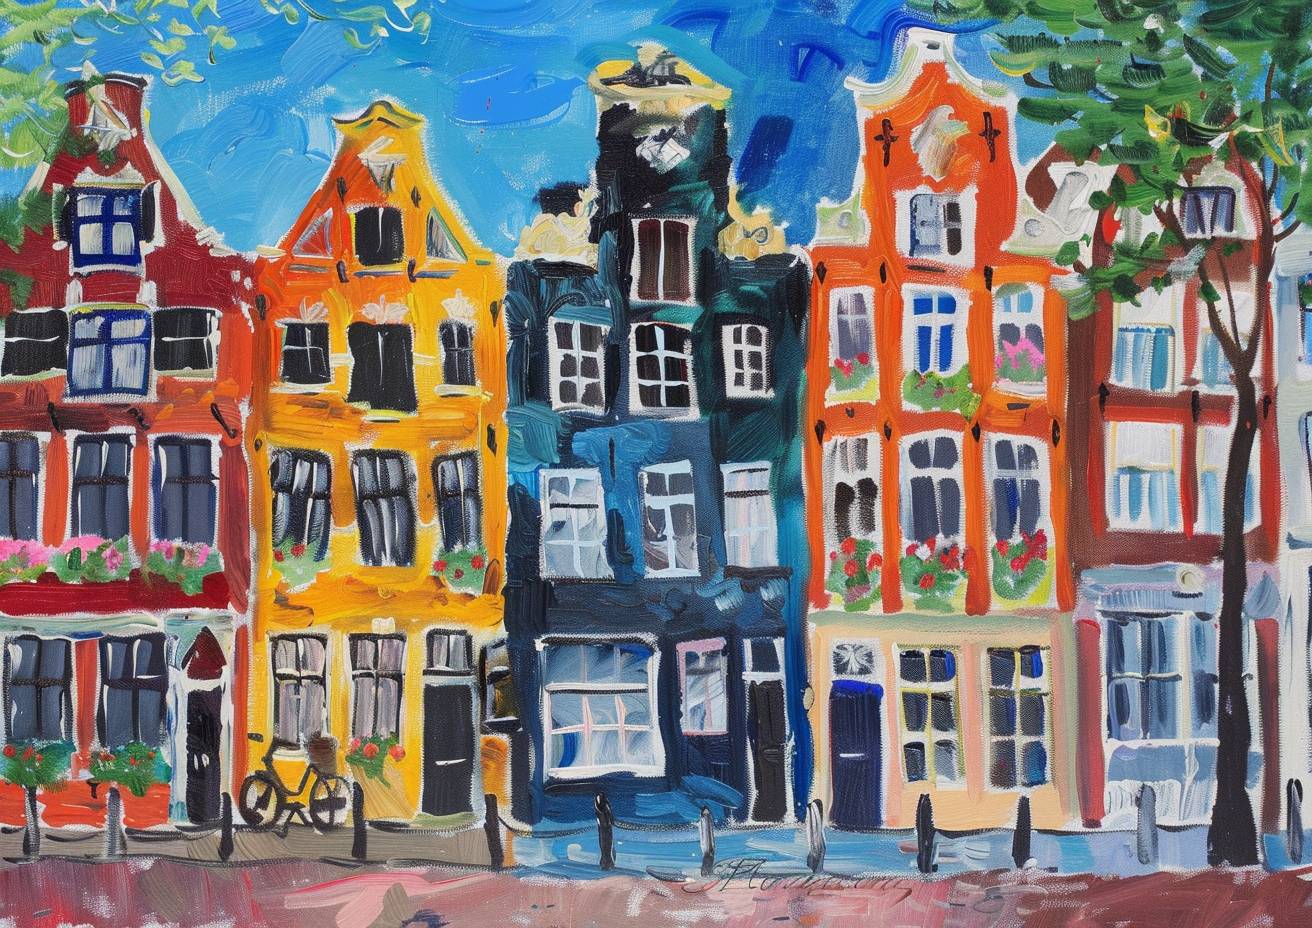 カラフルな影のスケッチ、アムステルダム、色鮮やかな連続した街並み、花々が咲く魅力的な通り、夏、イングランド、ソフィー・ブラッカルやモード・ルイス、シャガールによる驚くほど独創的で素晴らしい絵画、素晴らしい筆触、鋭い、ハイクオリティ、傑作、超鋭利